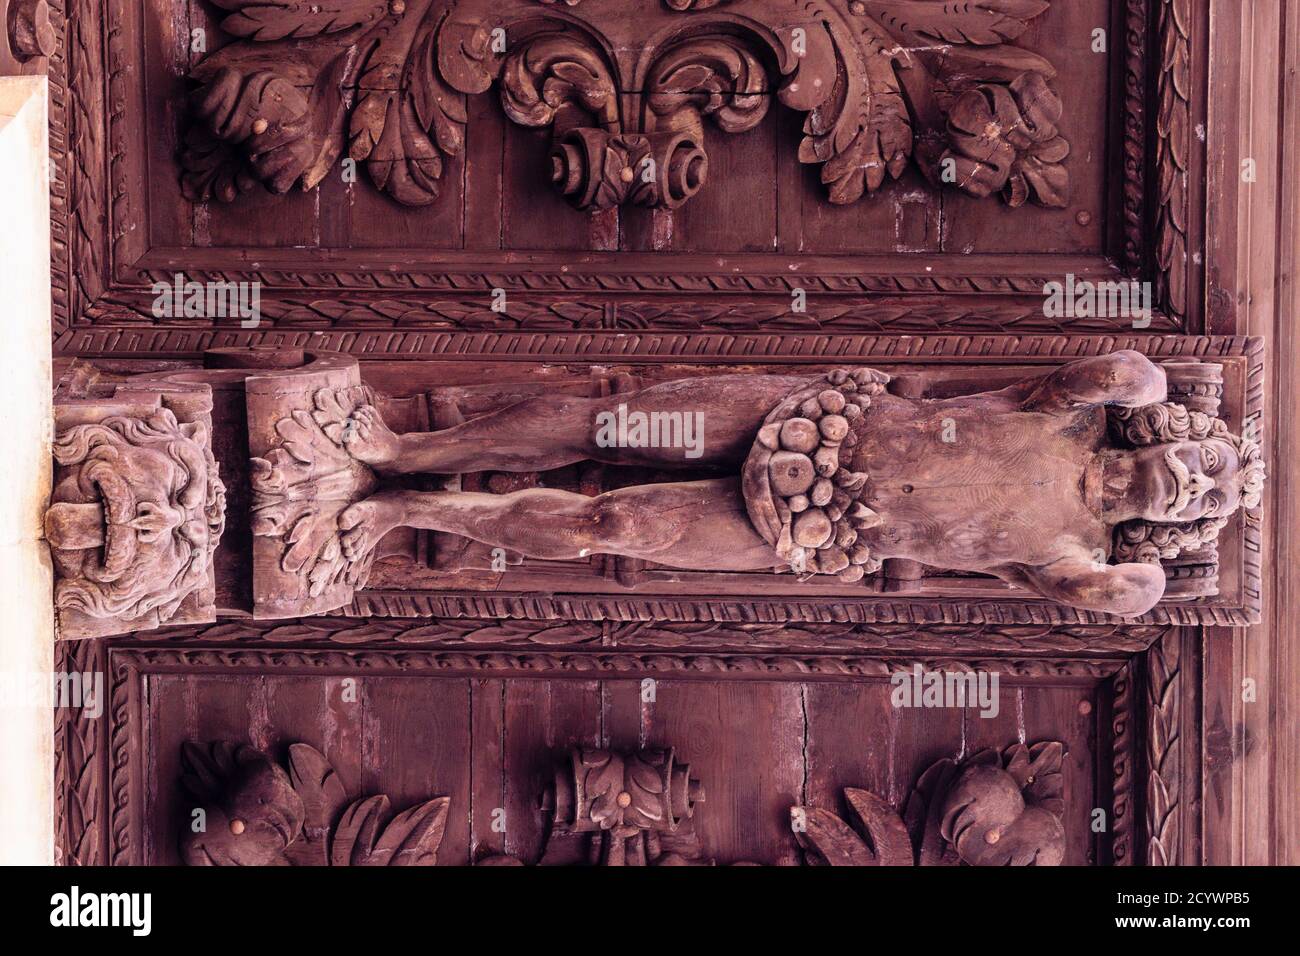 atlante, voladizo de madera en la fachada del ayuntamiento -tallado por el escultor Gabriel Torres Cladera en 1680-, plaza de Cort, Palma, mallorca, i Stock Photo